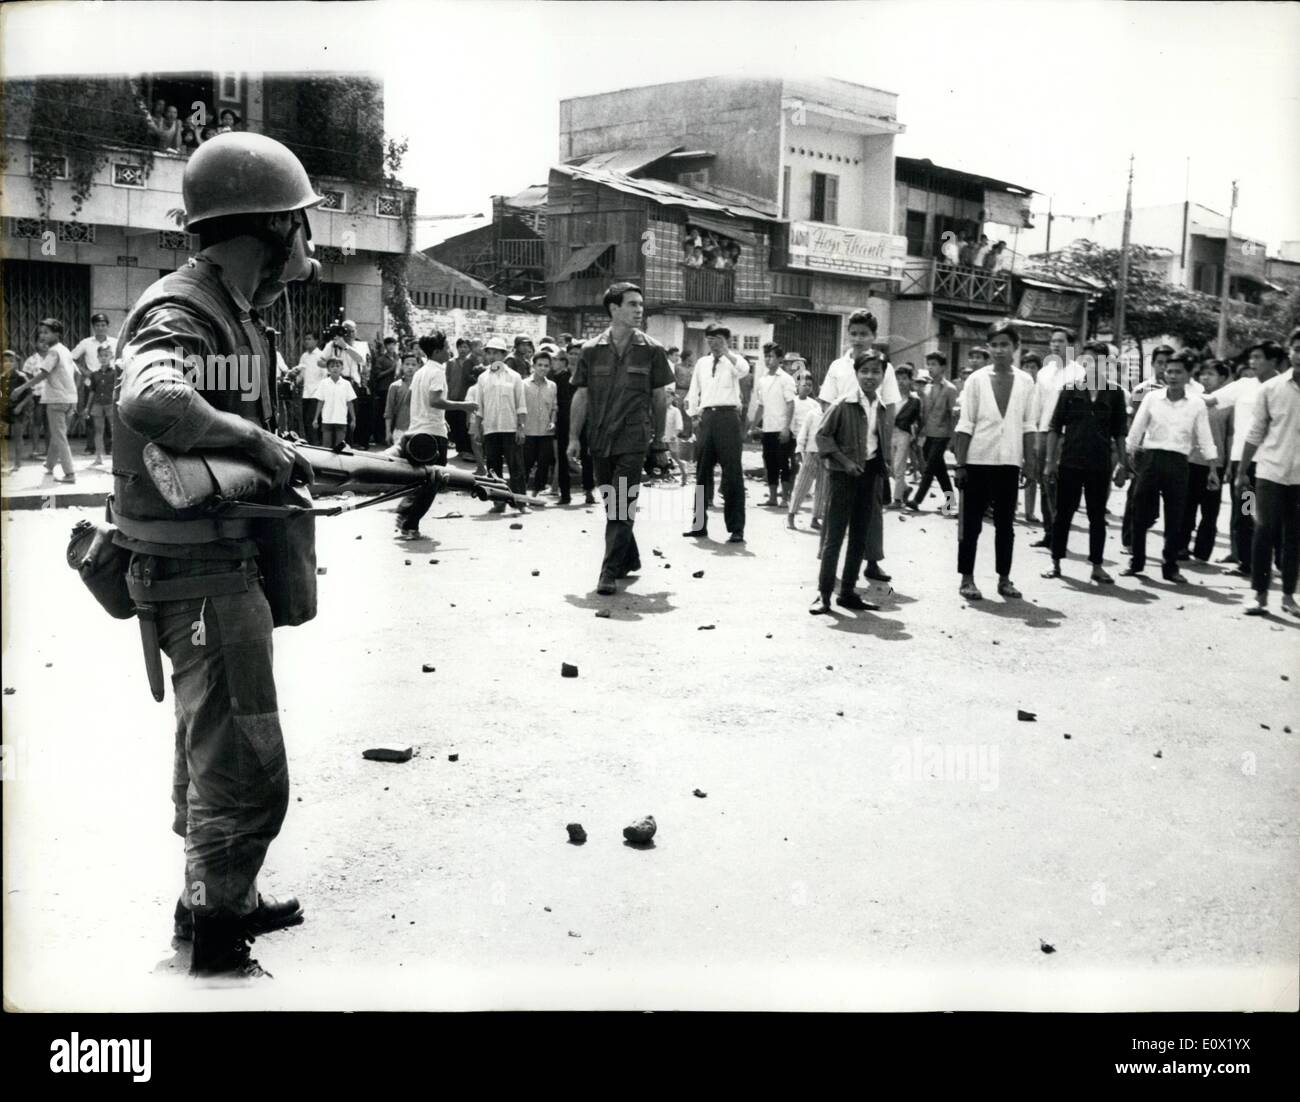 Il 12 Dic. 1964 - dimostrazioni degli studenti contro il governo di Saigon : folle - molti di loro gli studenti hanno dimostrato di fronte alla Bud hist institute di Saigon recentemente - fine ha iniziato a lanciare sassi contro i poliziotti e soldati nelle prime corna del mattino hanno bruciato bombolette di gas che hanno preso da parte dei camion e le apparecchiature del sistema acqua autorità. Poi hanno dato fuoco al camion, la polizia rick buttare lacrimogeni bos - e molti scontri scoppiati. Poi un rictrer passi una mano grande in mezzo alla folla - ferendo diverse della polizia rict la dimostrazione sono state contro il nuovo governo Foto Stock